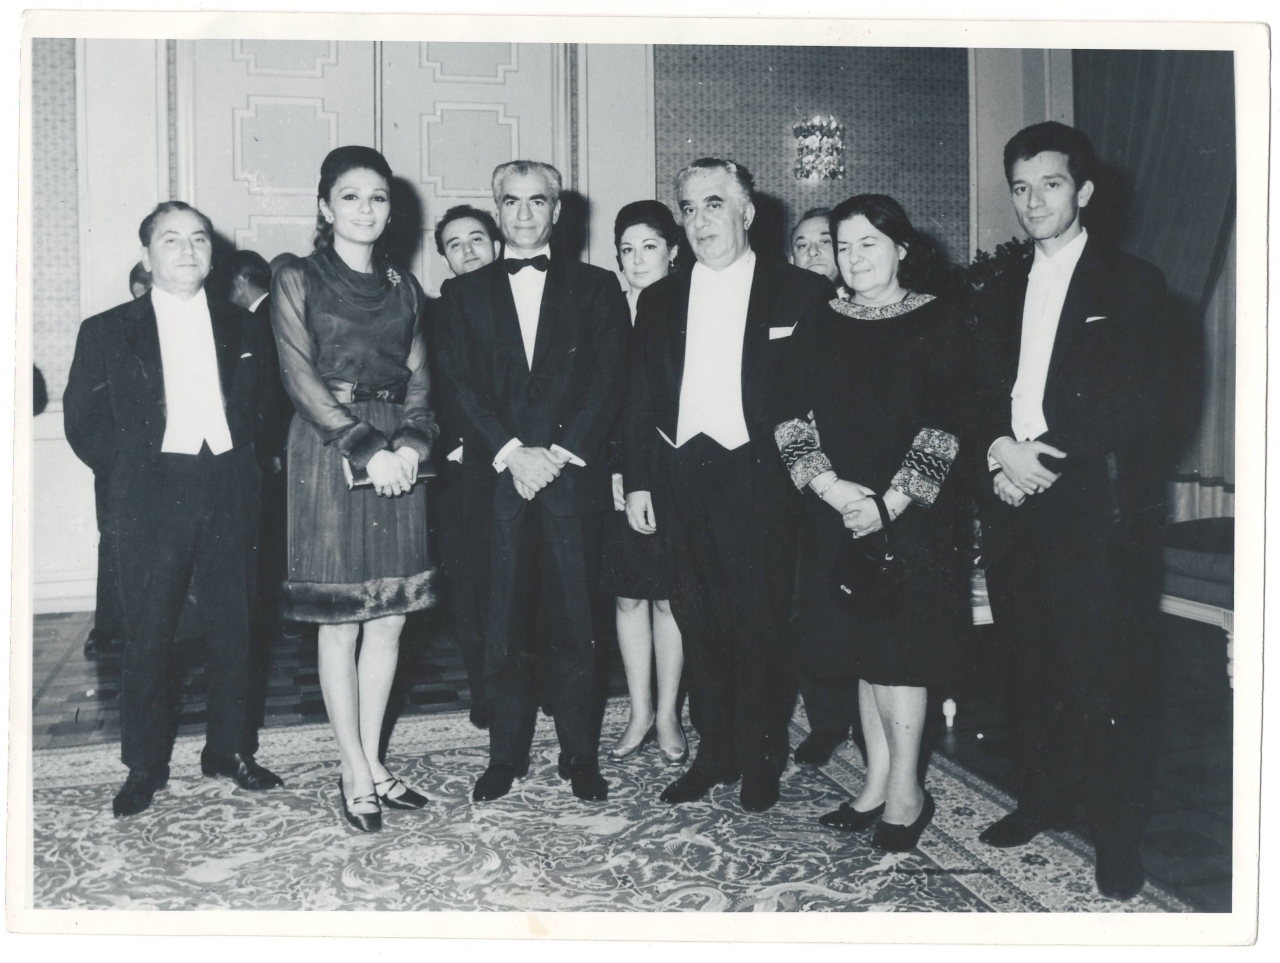 Լուսանկար. Ա.Խաչատրյանը կնոջ՝ Ն.Մակարովայի, Իրանի Շահինշահ Ռեզա Փեհլեվիի, նրա կնոջ ՝ Սորենի և համերգին մասնակից երաժիշտների հետ: